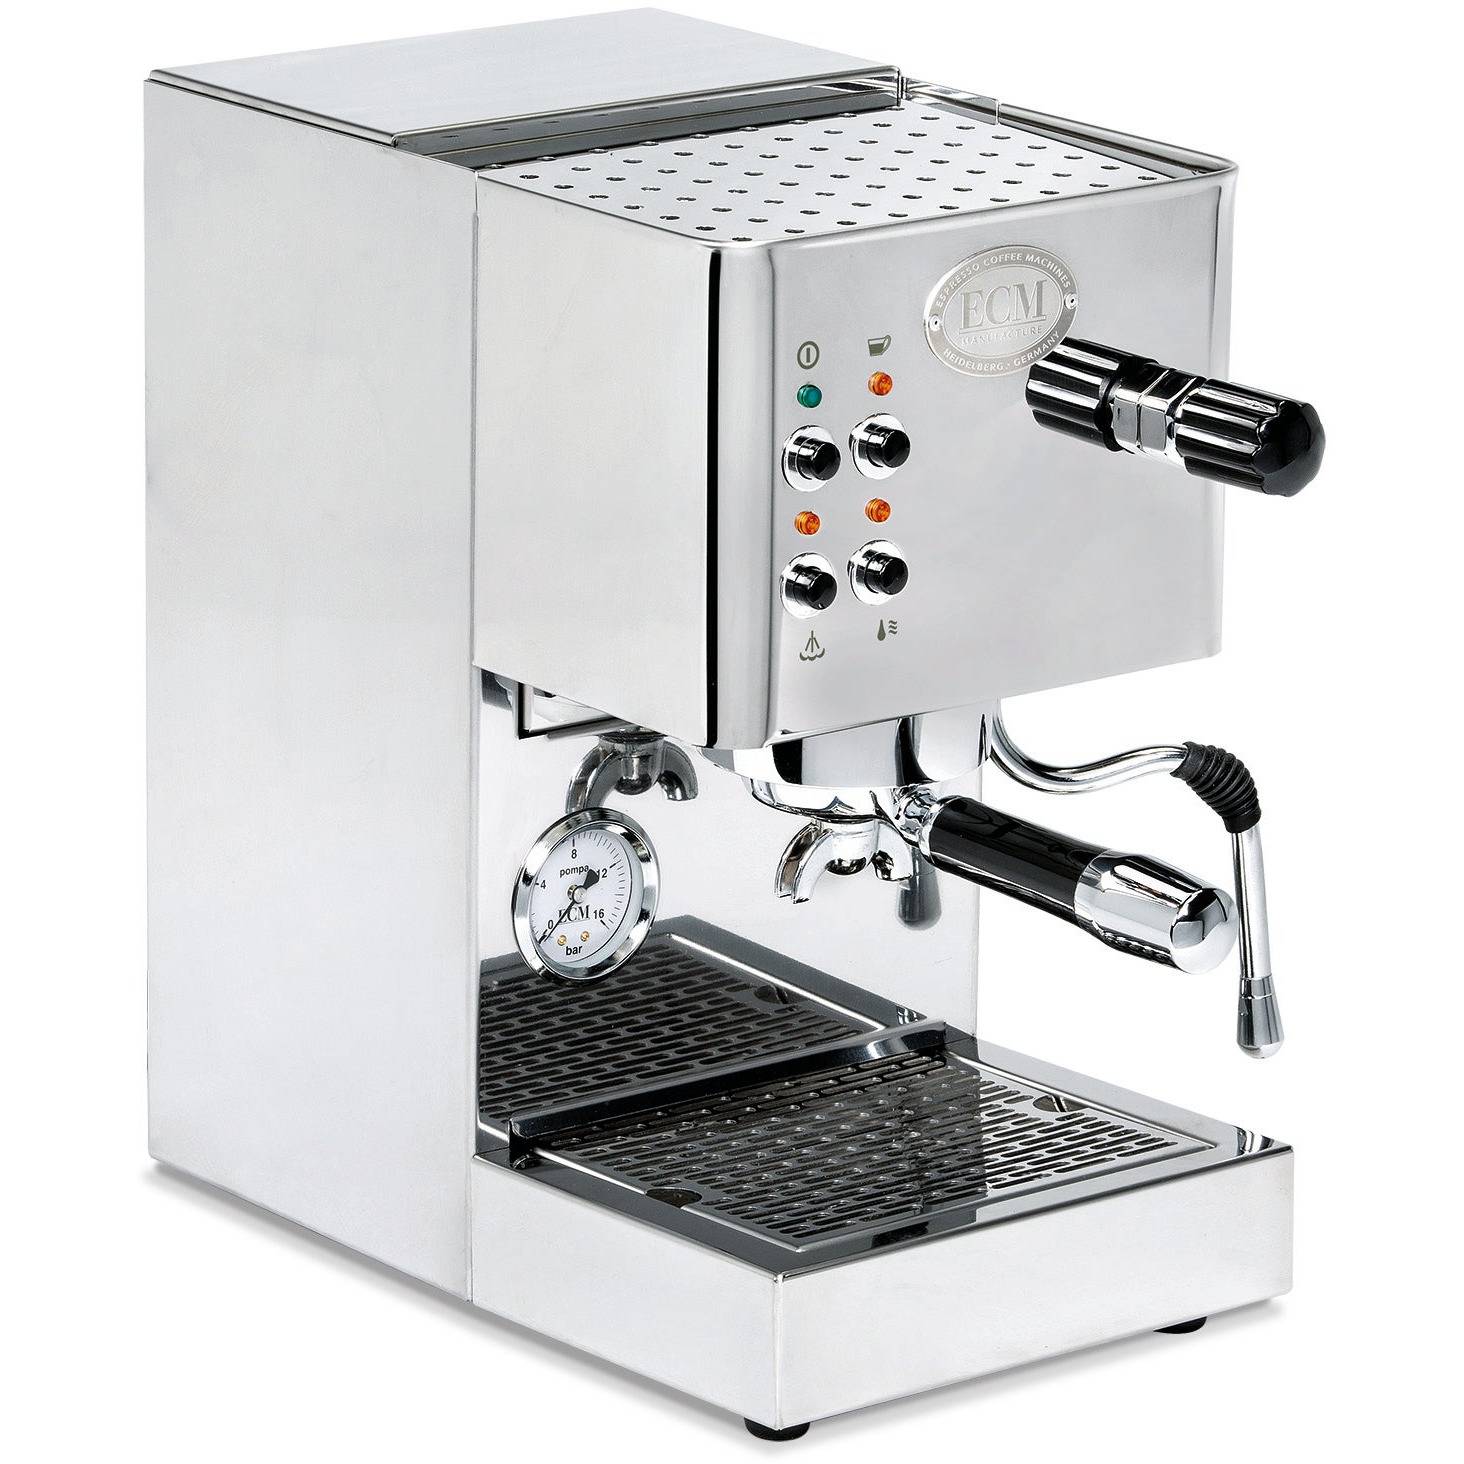 ECM Casa V - Kompakt, Schell startbereit  Einkreiser Espressomaschinen ECM    - Rheinland.Coffee